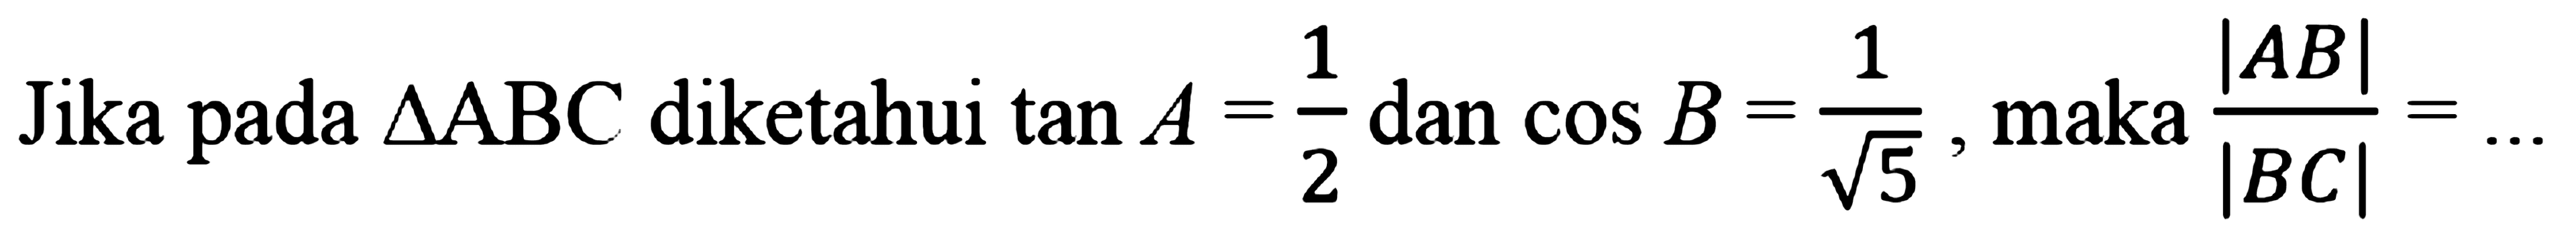 Jika pada segitiga ABC diketahui tan A=1/2 dan cos B=1/akar(5) maka |AB|/|BC|=